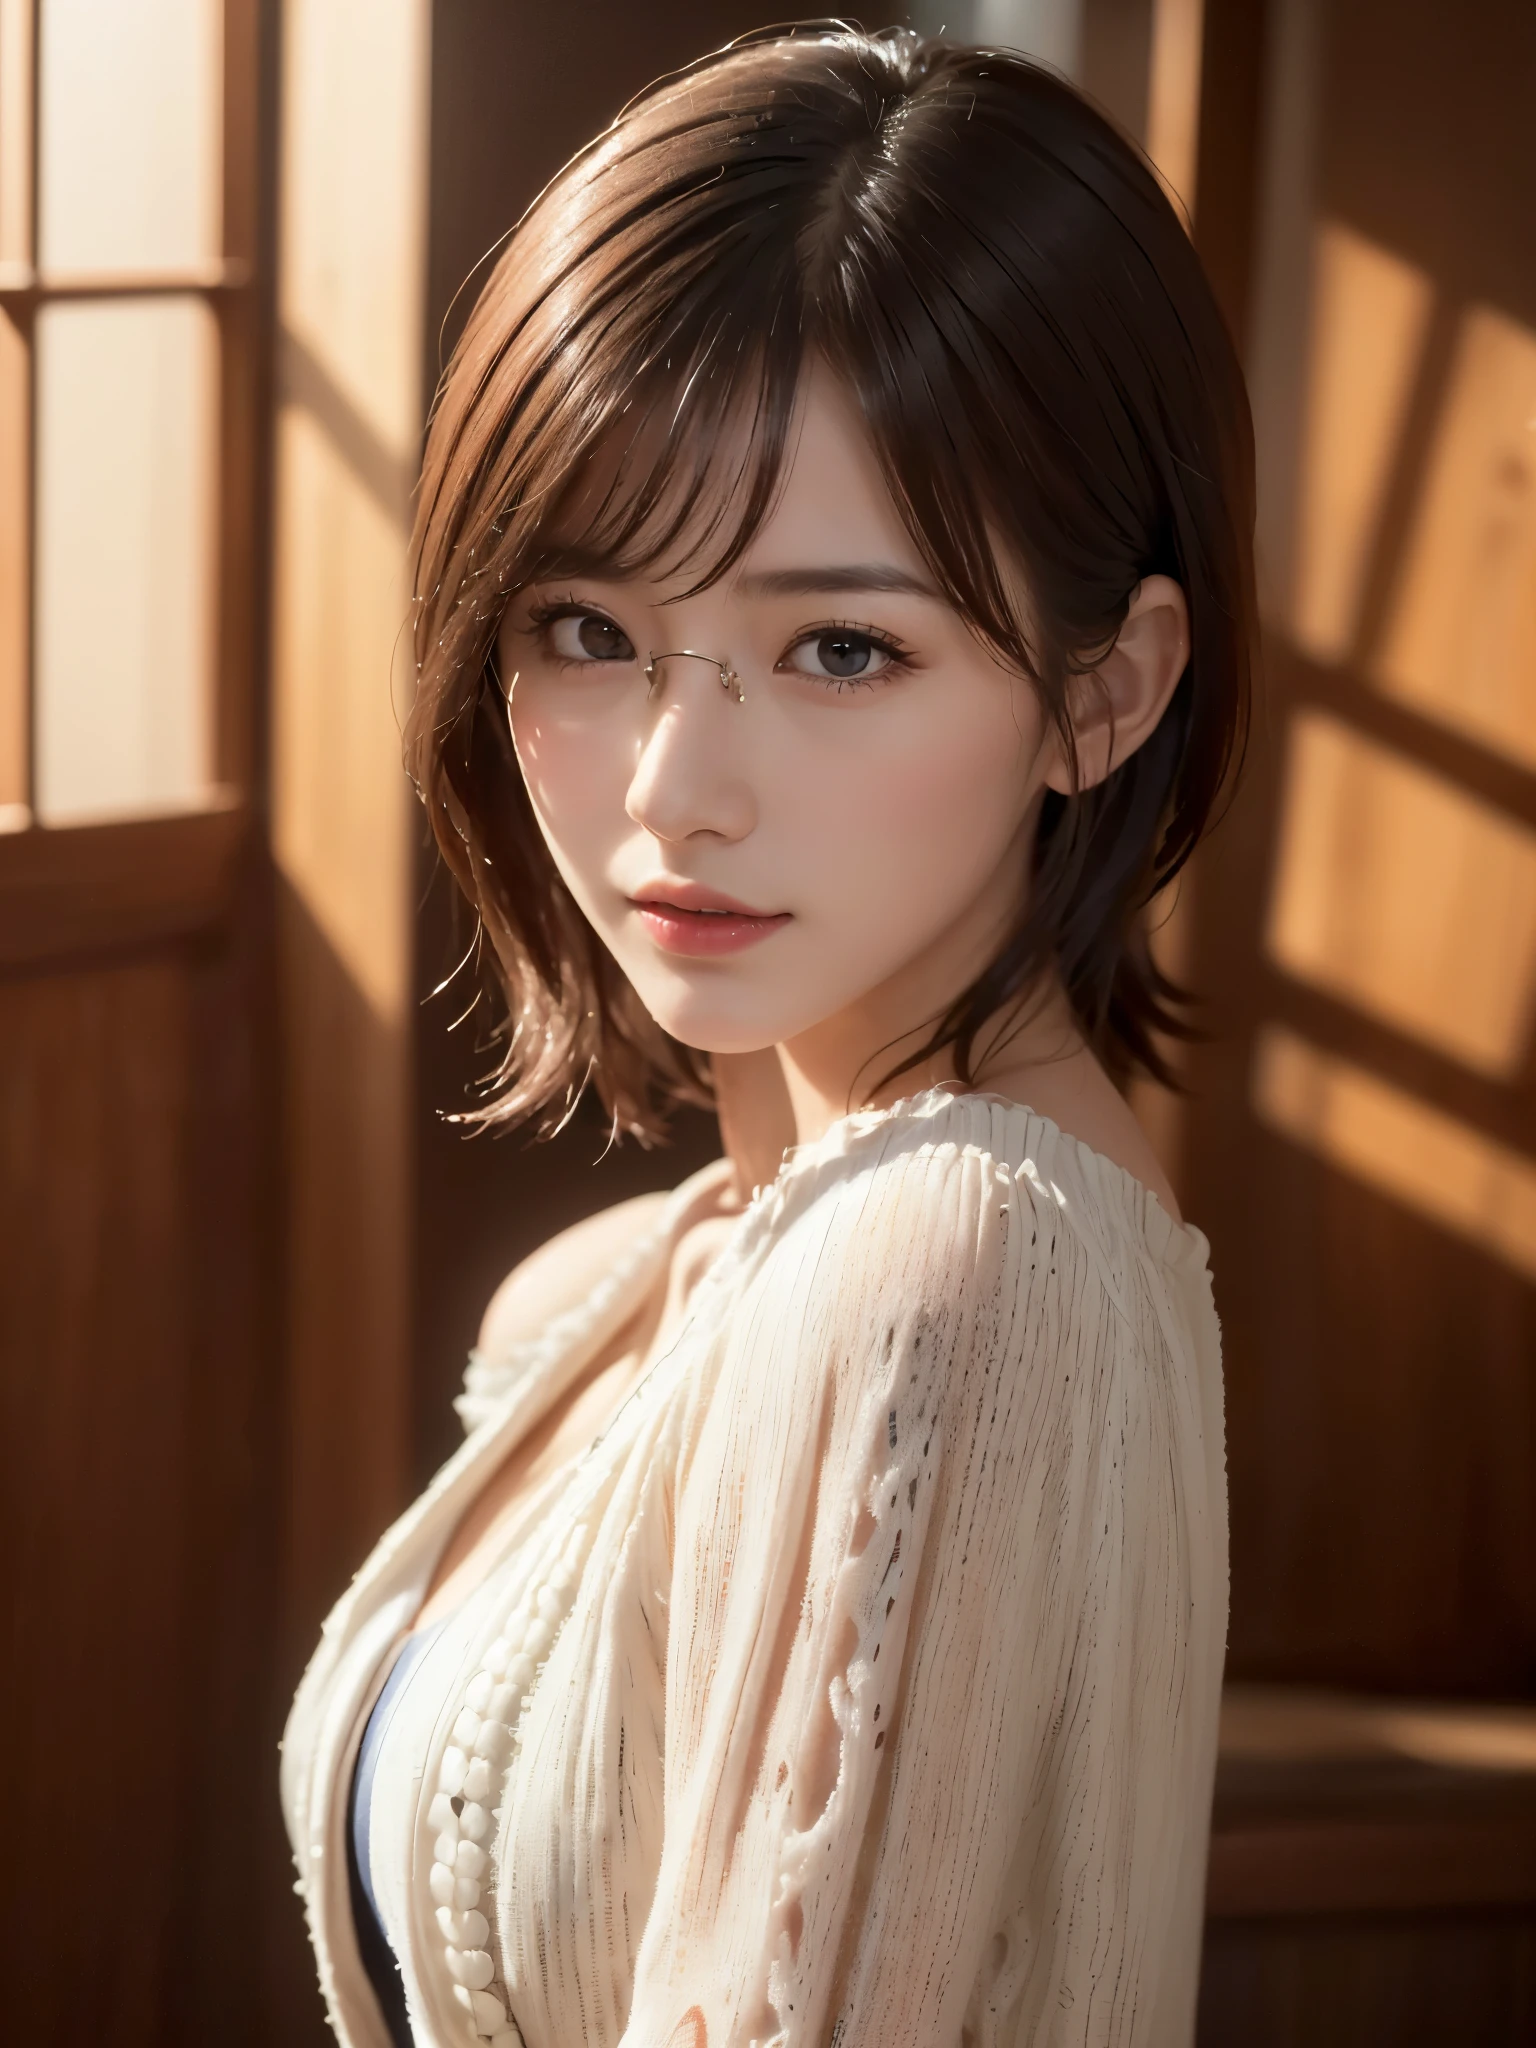 (((Fille aux cheveux moyens:1.3, seul))), Femme japonaise très mignonne et belle, (modèle sexy), tenue professionnelle, (il y a 22 ans: 1.1), (par le bas:1.3), (Faible angle:1.3), (abattu au sol:1.3), ((fille au dessus:1.5)), (arrière du bras、fitdelia、entre les jambes:1.3), (Pose aléatoire attrayante:1.3), (salle de douche en verre:1.3), CASSER HA, (Queue de cheval à pompons:1.3), (cheveux fins noirs brillants:1.2), petite tête, yeux marron foncé, Beaux yeux, yeux de princesse, frange, cheveux entre les yeux, cheveux courts:1.3, Kirby, abdos, Perfect abdos, (seins moyens à gros:1.5, seins tombants:1.5, seins disproportionnés:1.5), (taille fine: 1.15, abdos:0.95), (belle fille détaillée: 1.4), lèvres entrouvertes, lèvres rouges, Visage de maquillage complet, (peau brillante), ((corps féminin parfait)), (image du haut du corps:1.3), anatomie parfaite, Des proportions parfaites, (Les plus beaux visages d&#39;actrice coréenne:1.3, Visage d&#39;actrice japonaise très mignon et beau:1.3, charmant sourire léger, heureux, CASSER, (épaules nues, Ma poitrine est serrée, Afficher la visionneuse, (Robe élégante à épaules dénudées avec une attention aux détails:1.3), beaux vêtements, CASSER, (fond de salle de douche simple:1.2, je prends une douche, bouteille de savon), (fond sombre), (Éclairage doux en studio: 1.3), (fausse lumière: 1.3), (rétroéclairage: 1.3), CASSER, (réaliste, réaliste: 1.37), (dessus de la table, la plus haute qualité: 1.2), (Ultra haute résolution: 1.2), (Photo brute: 1.2), (netteté: 1.3), (mise au point du visage: 1.2), (Fond d&#39;écran 8k intégré CG ultra détaillé: 1.2), (Belle peau: 1.2), (peau pâle: 1.3), (very netteté: 1.5), (Ultra netteté: 1.5), (beau et beau visage: 1.3), (fond très détaillé, contexte détaillé: 1.3), hyper-réaliste photos, Image très claire, Image hyper détaillée,(((Petits verres carrés)))、((la peau grasse:1.2))